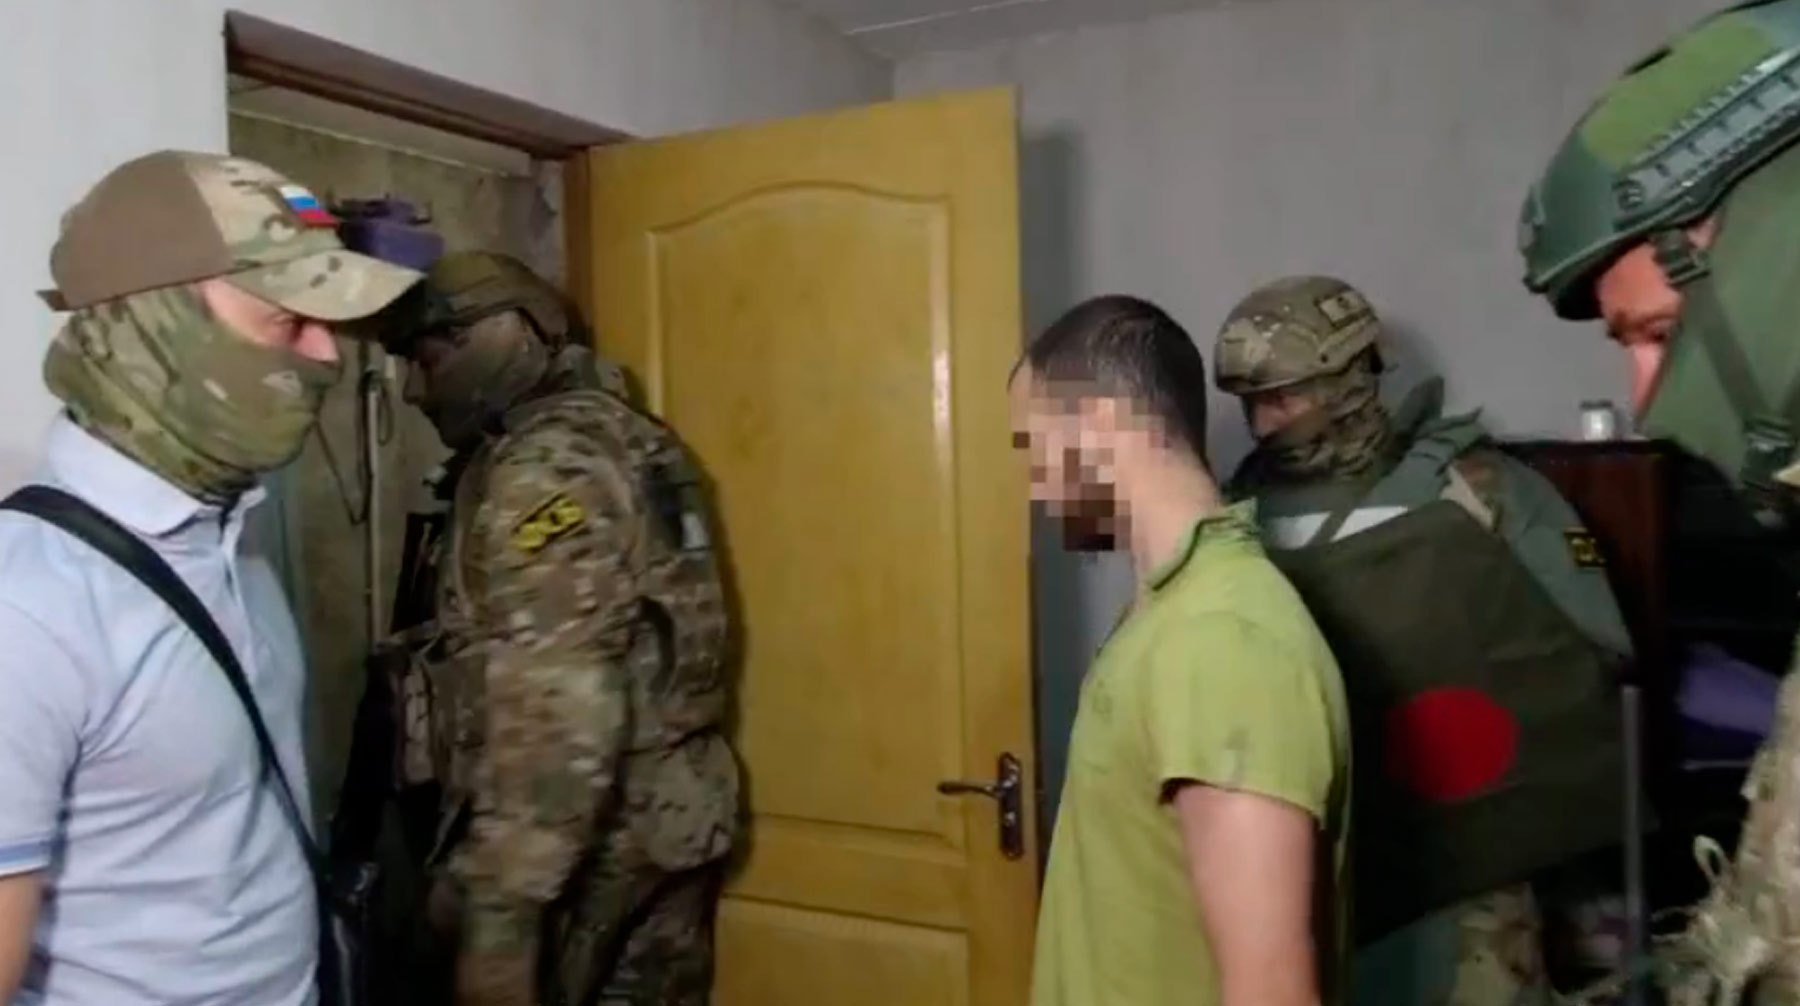 Задержанные распространяли среди жителей полуострова террористическую идеологию, пояснили силовики Фото: © кадр из видео ФСБ